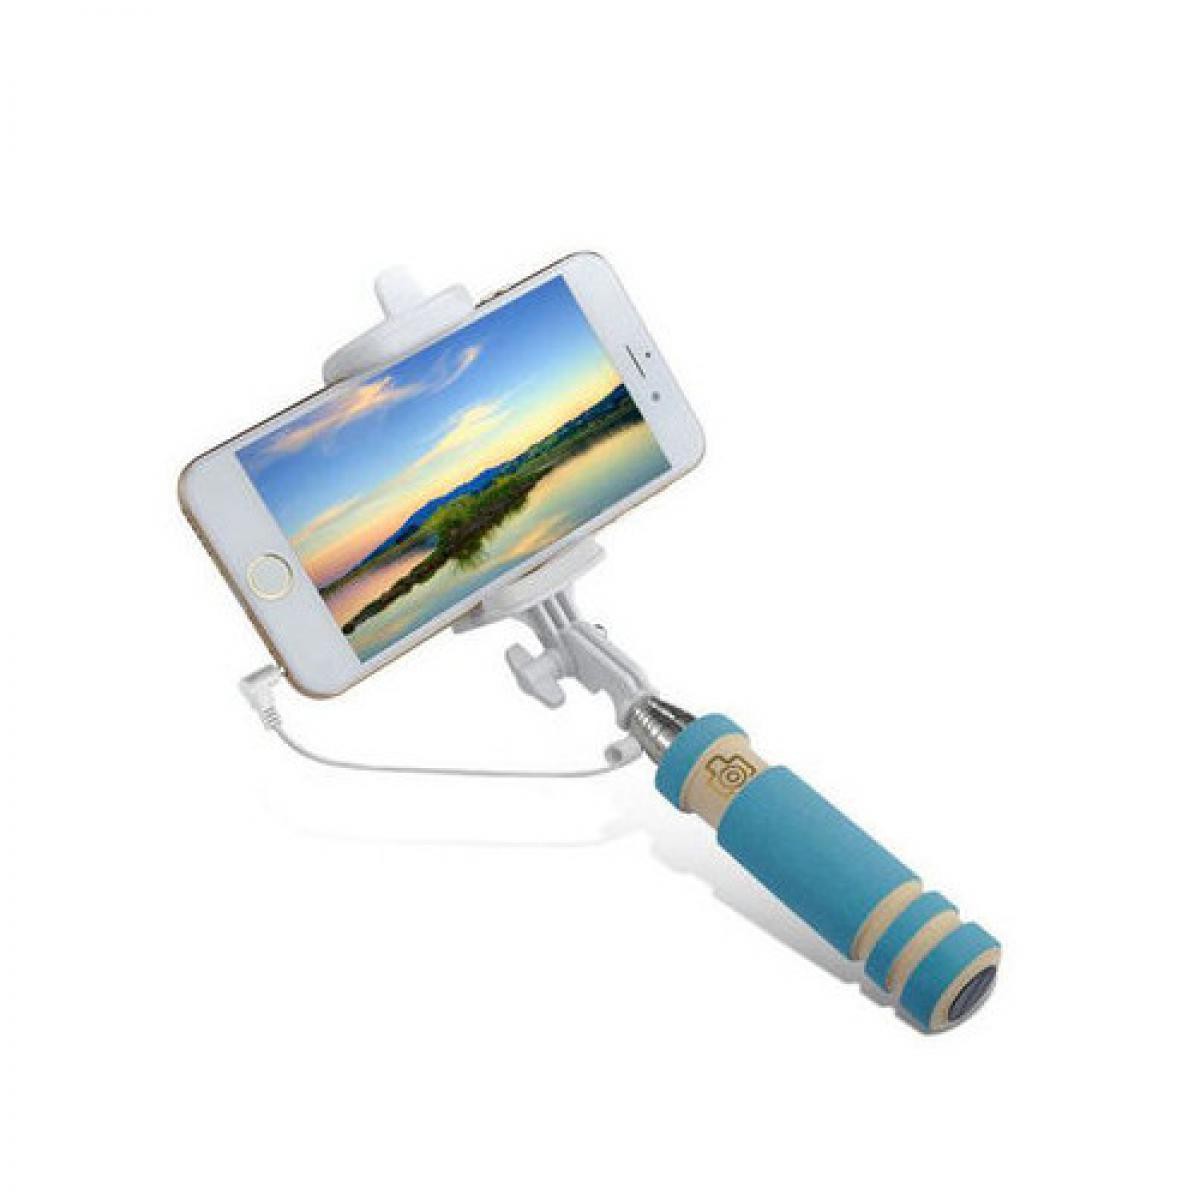 Shot - Mini Perche Selfie pour "IPHONE 12 Pro Max" avec Cable Jack Selfie Stick IOS Reglable Bouton Photo (BLEU) - Autres accessoires smartphone